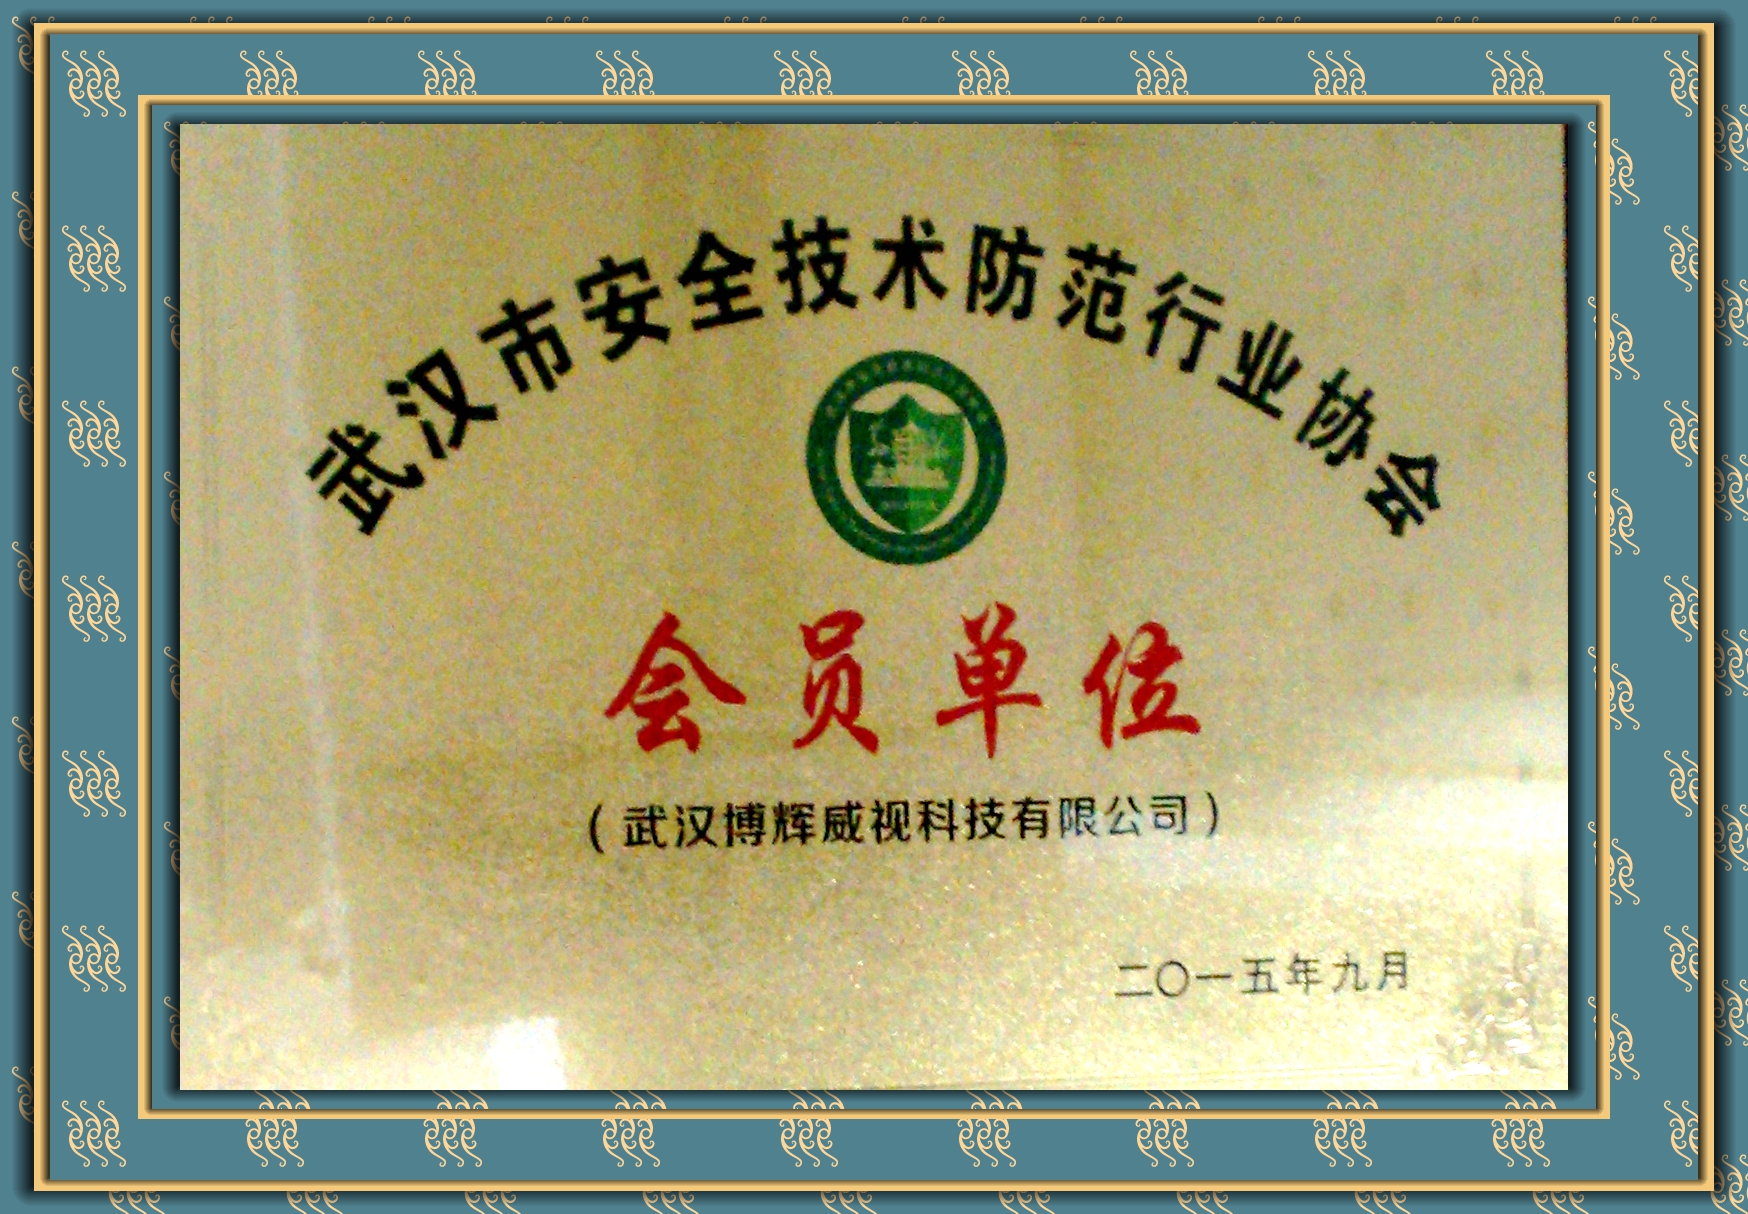 博辉威视武汉安全技术防范协会会员单位